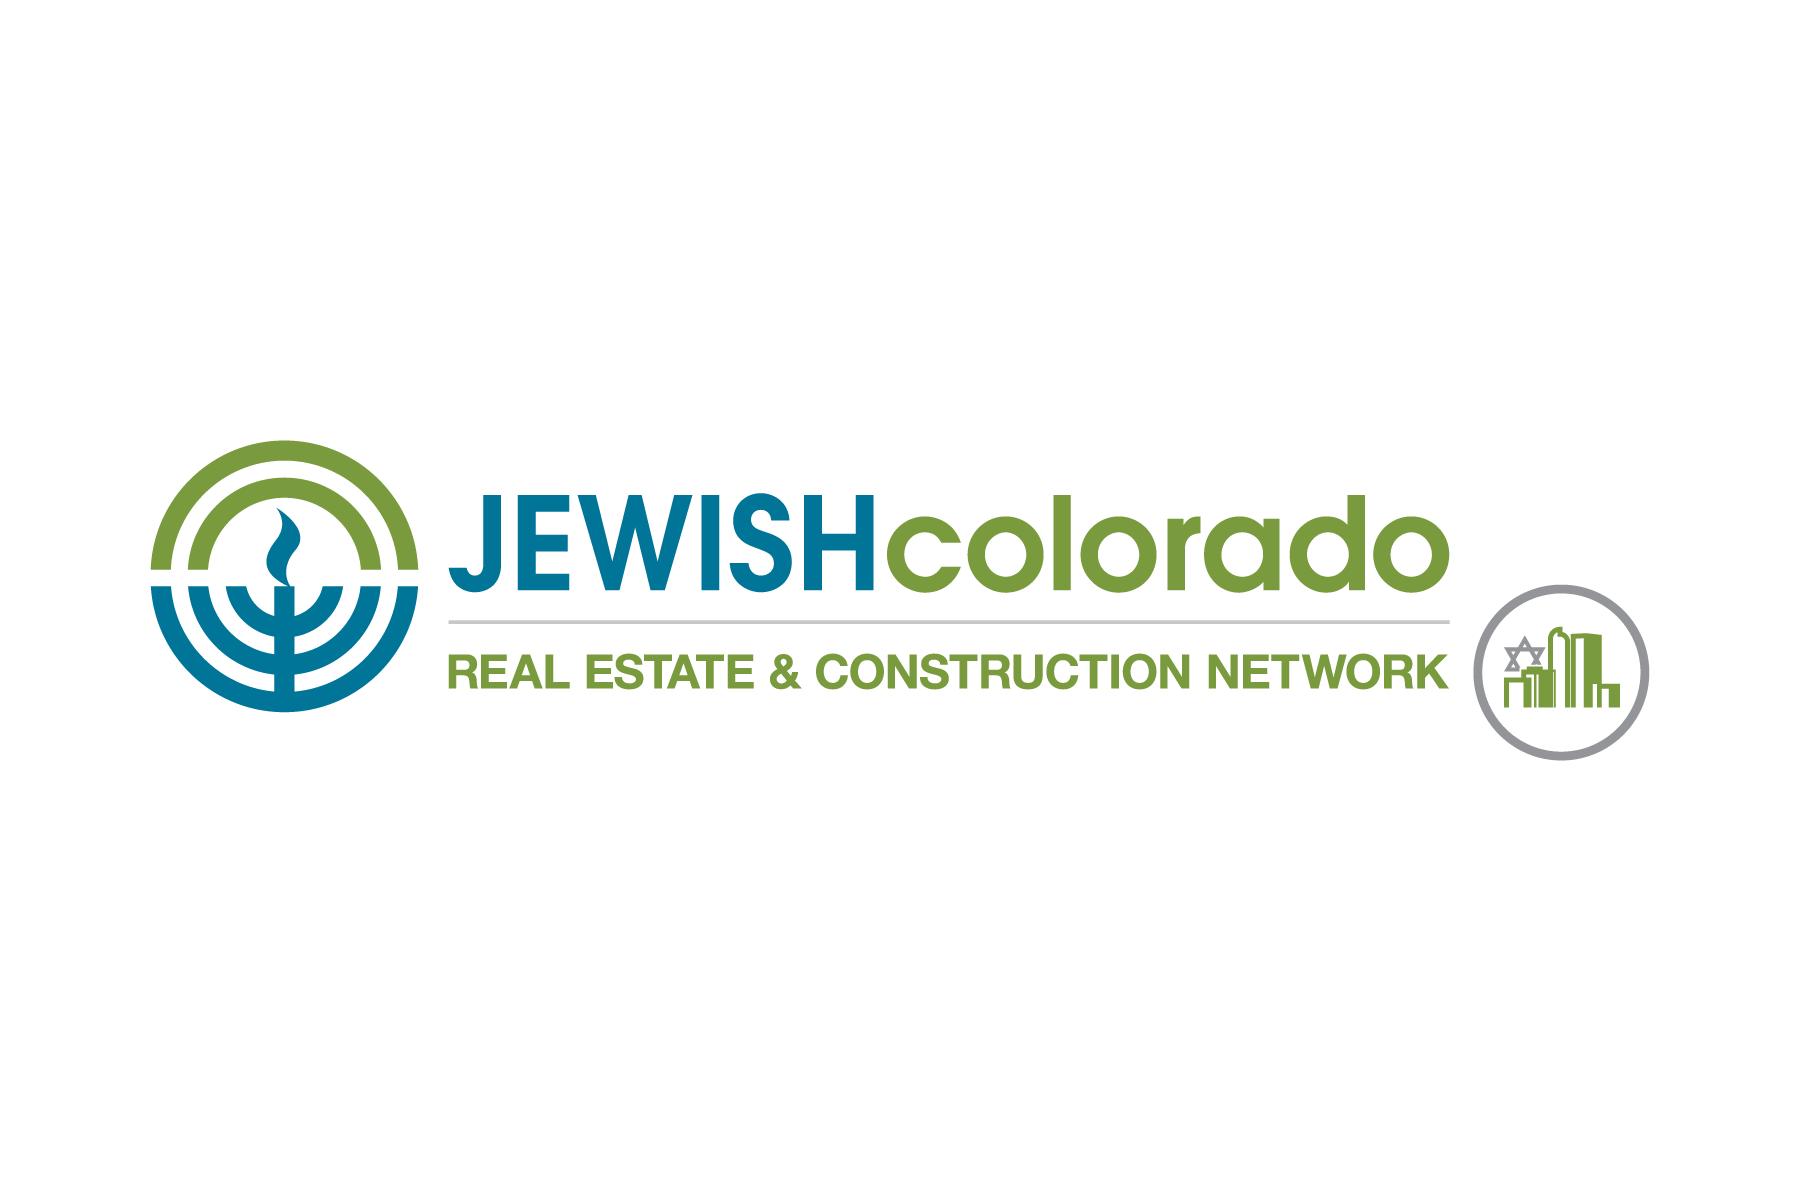 JEWISHcolorado Real Estate & Construction Network